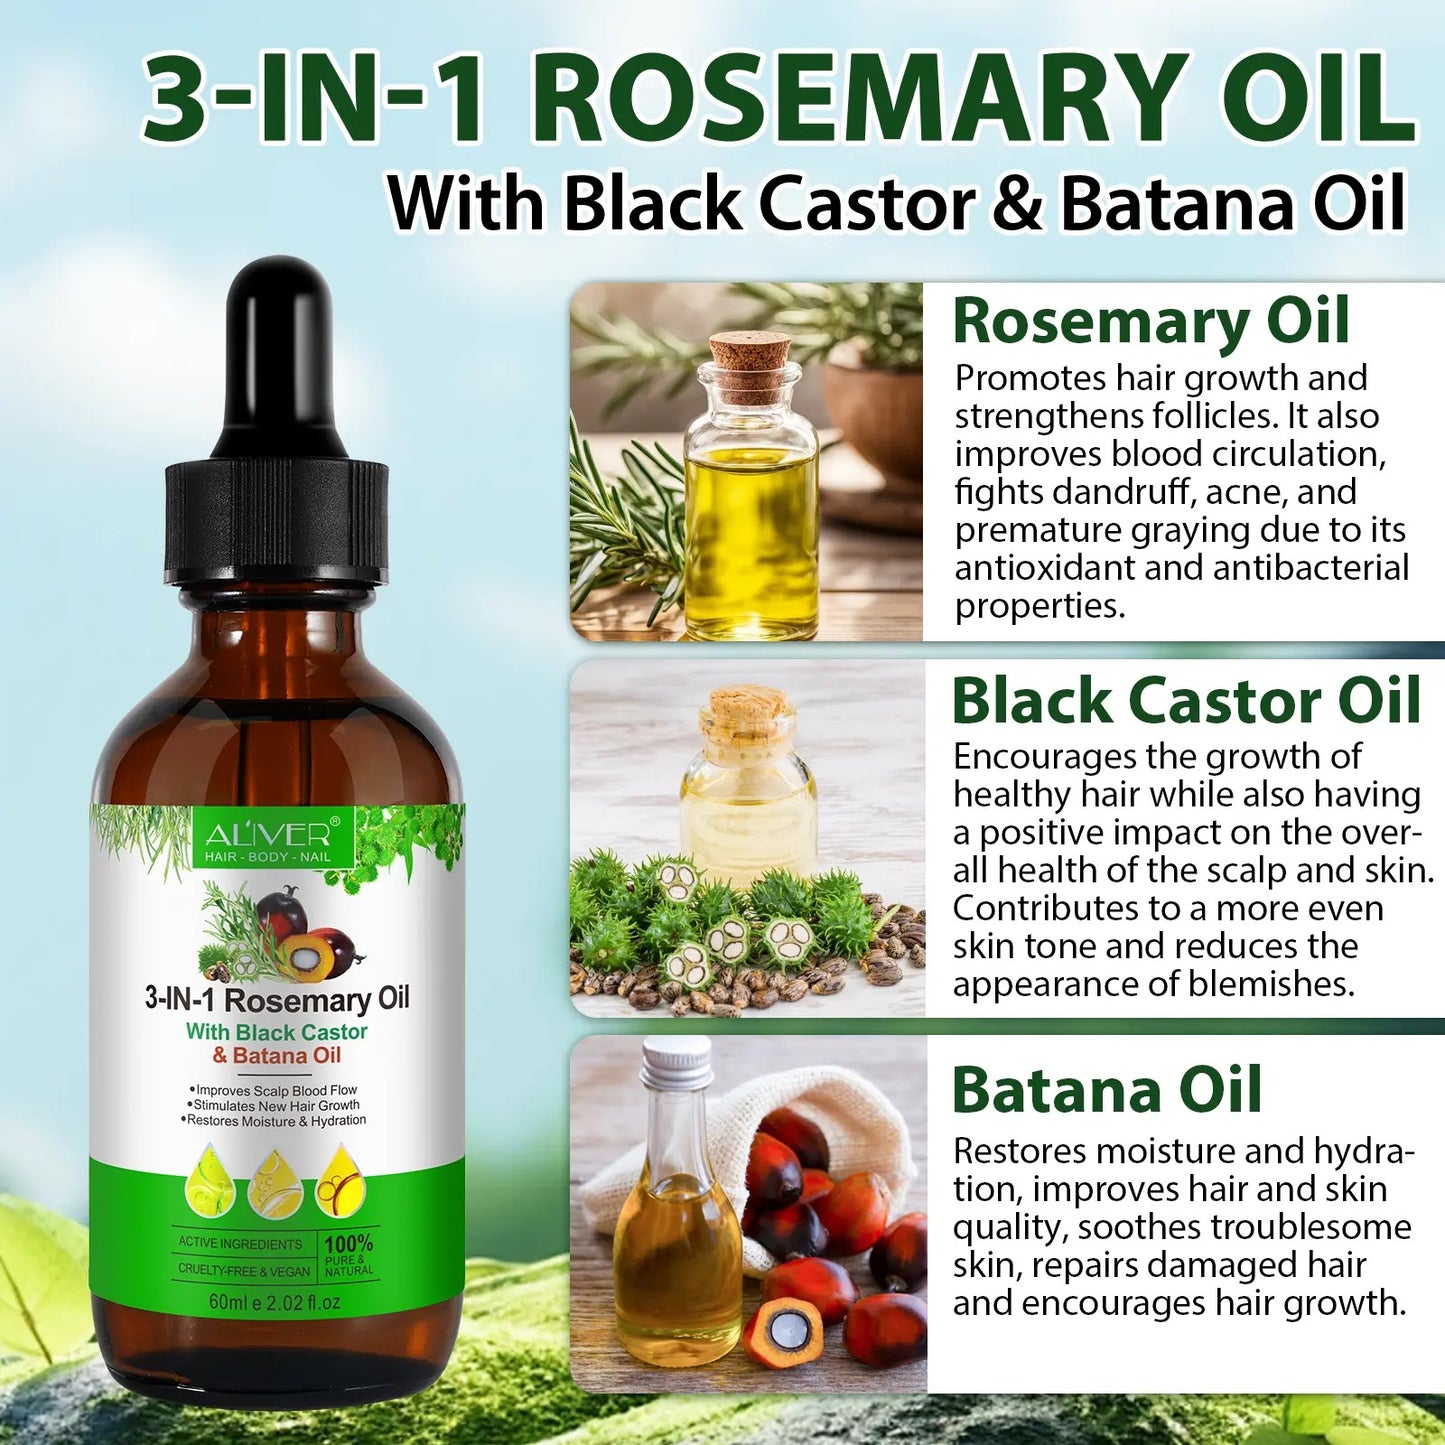 3-in-1 Rosemary Oil with Black Castor & Batana Oil